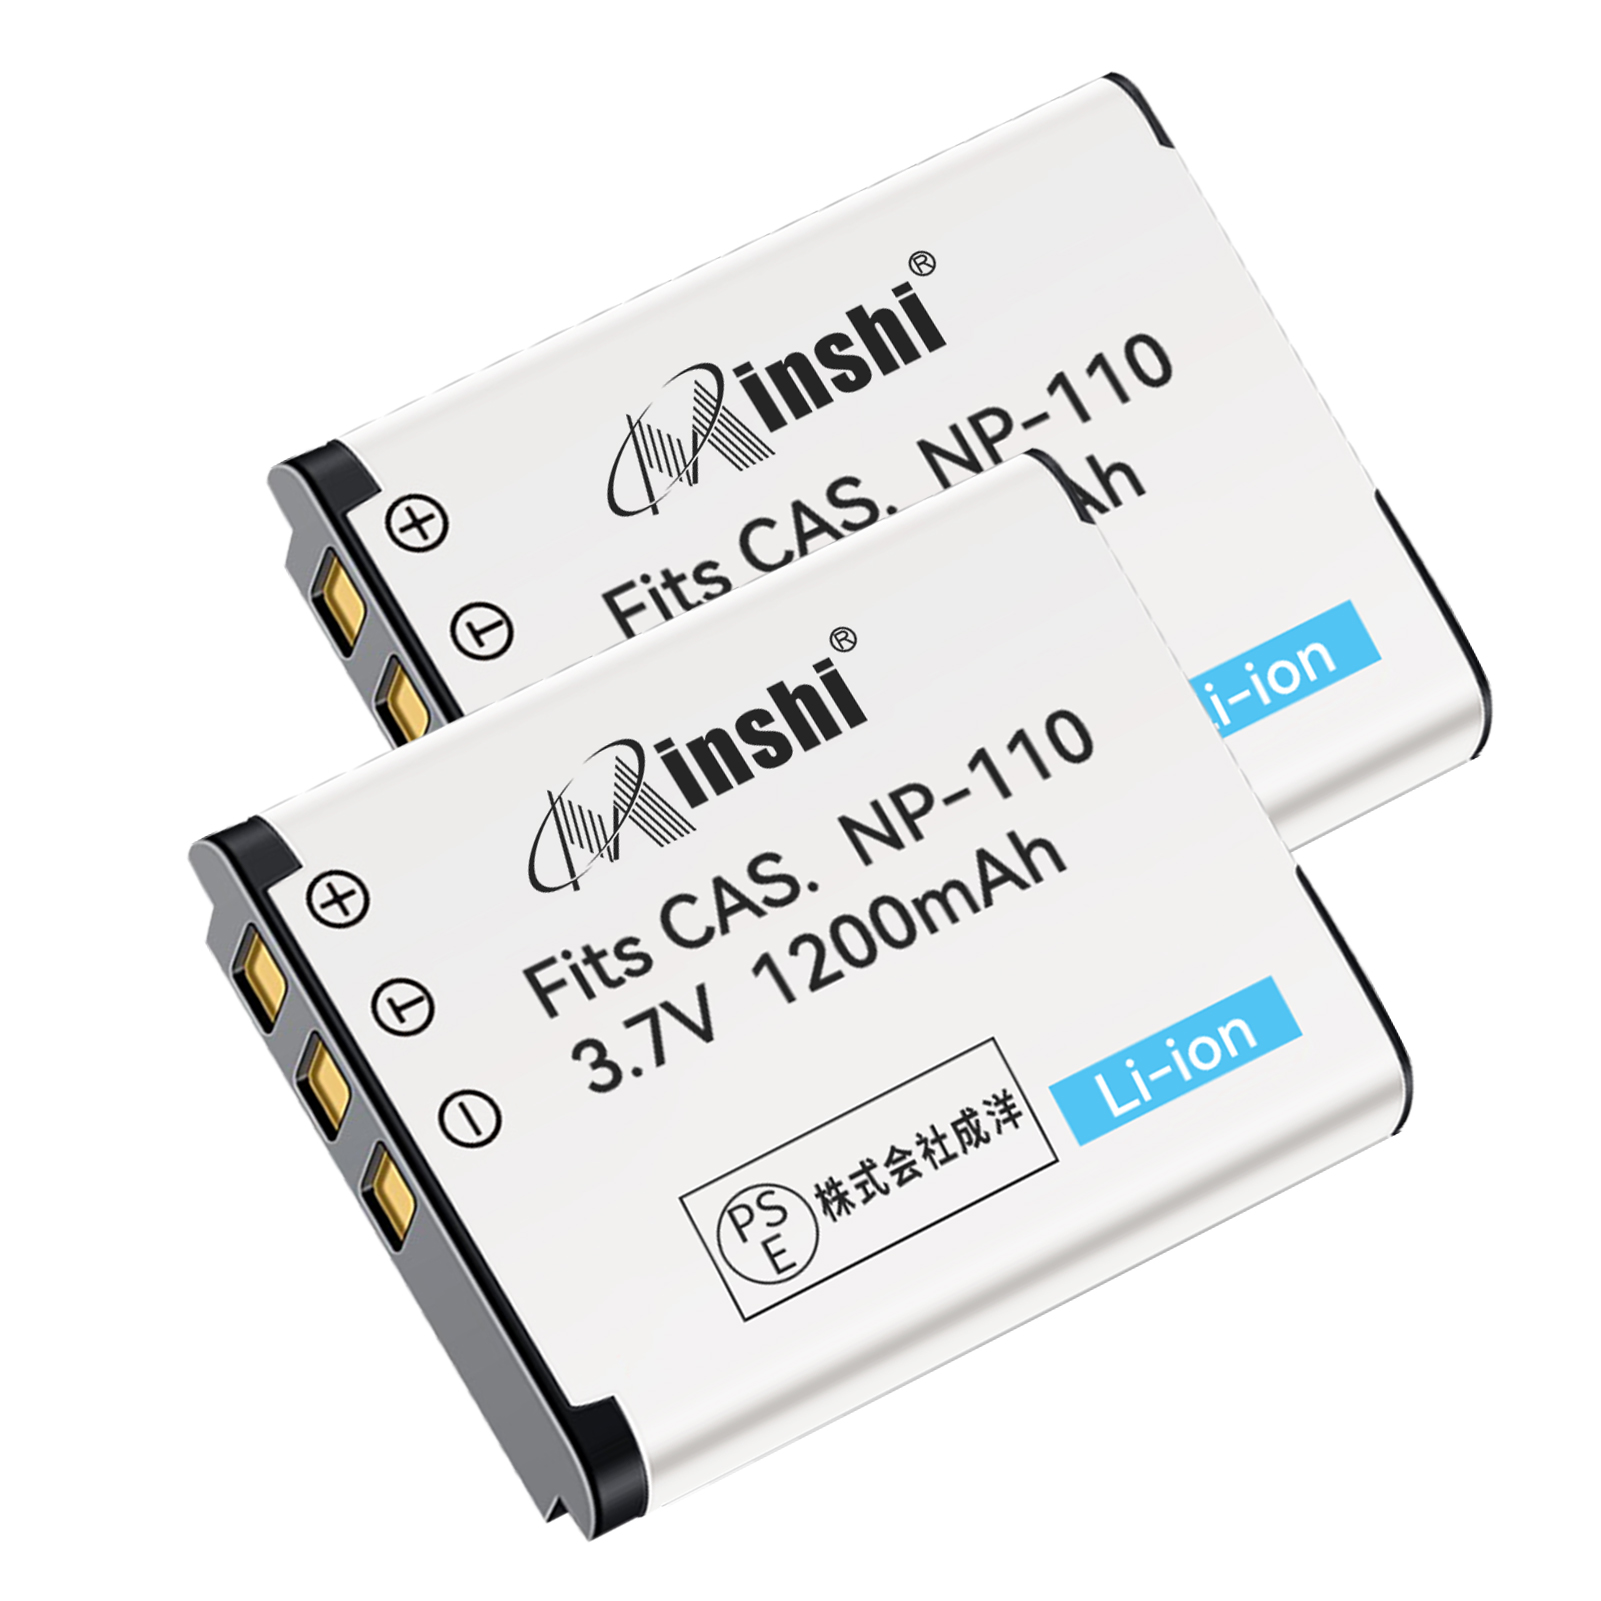 【２個セット】minshi CASIO NP-110【1200mAh 3.7V】PSE認定済 高品質NP-160互換バッテリーWHG